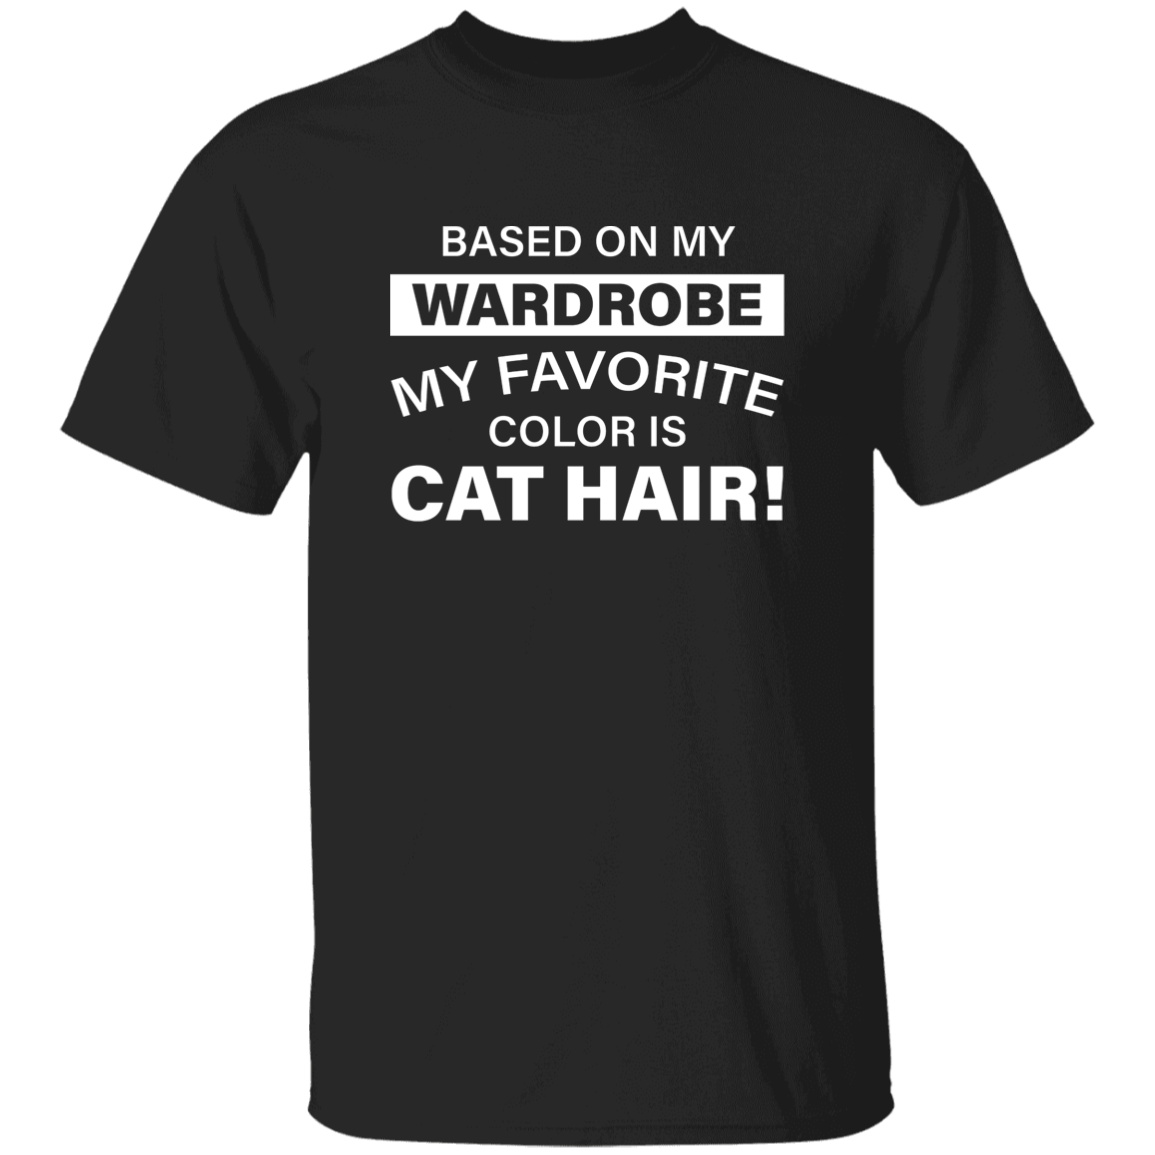 Favorite Color Cat Hair - T Shirt.